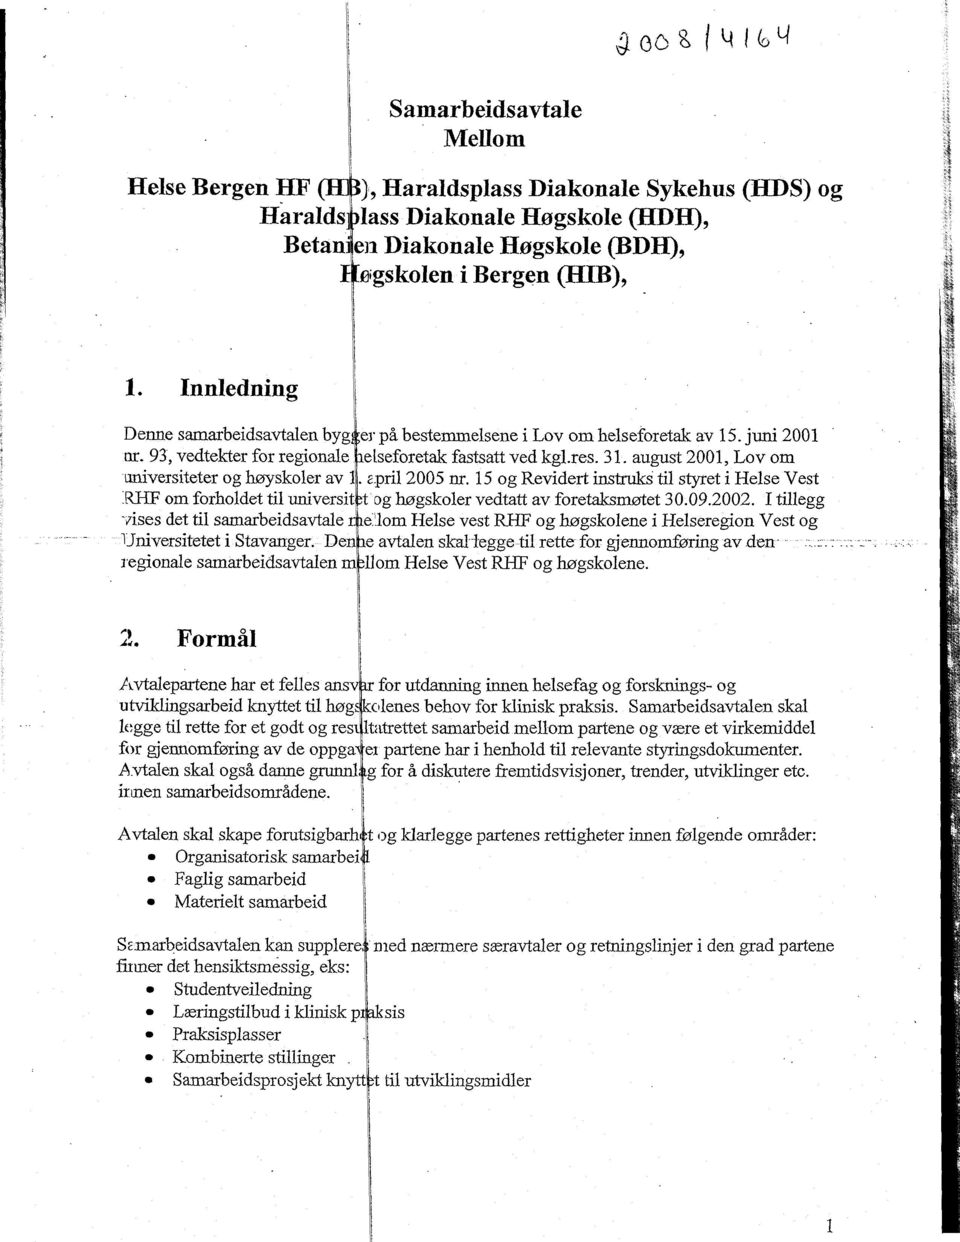 august 2001, Lov om universiteter og høyskoler av 1. april 2005 nr. 15 og Revidert instruks til styret i Helse Vest REF om forholdet til universit tdg høgskoler vedtatt av foretaksmøtet 30.09.2002.